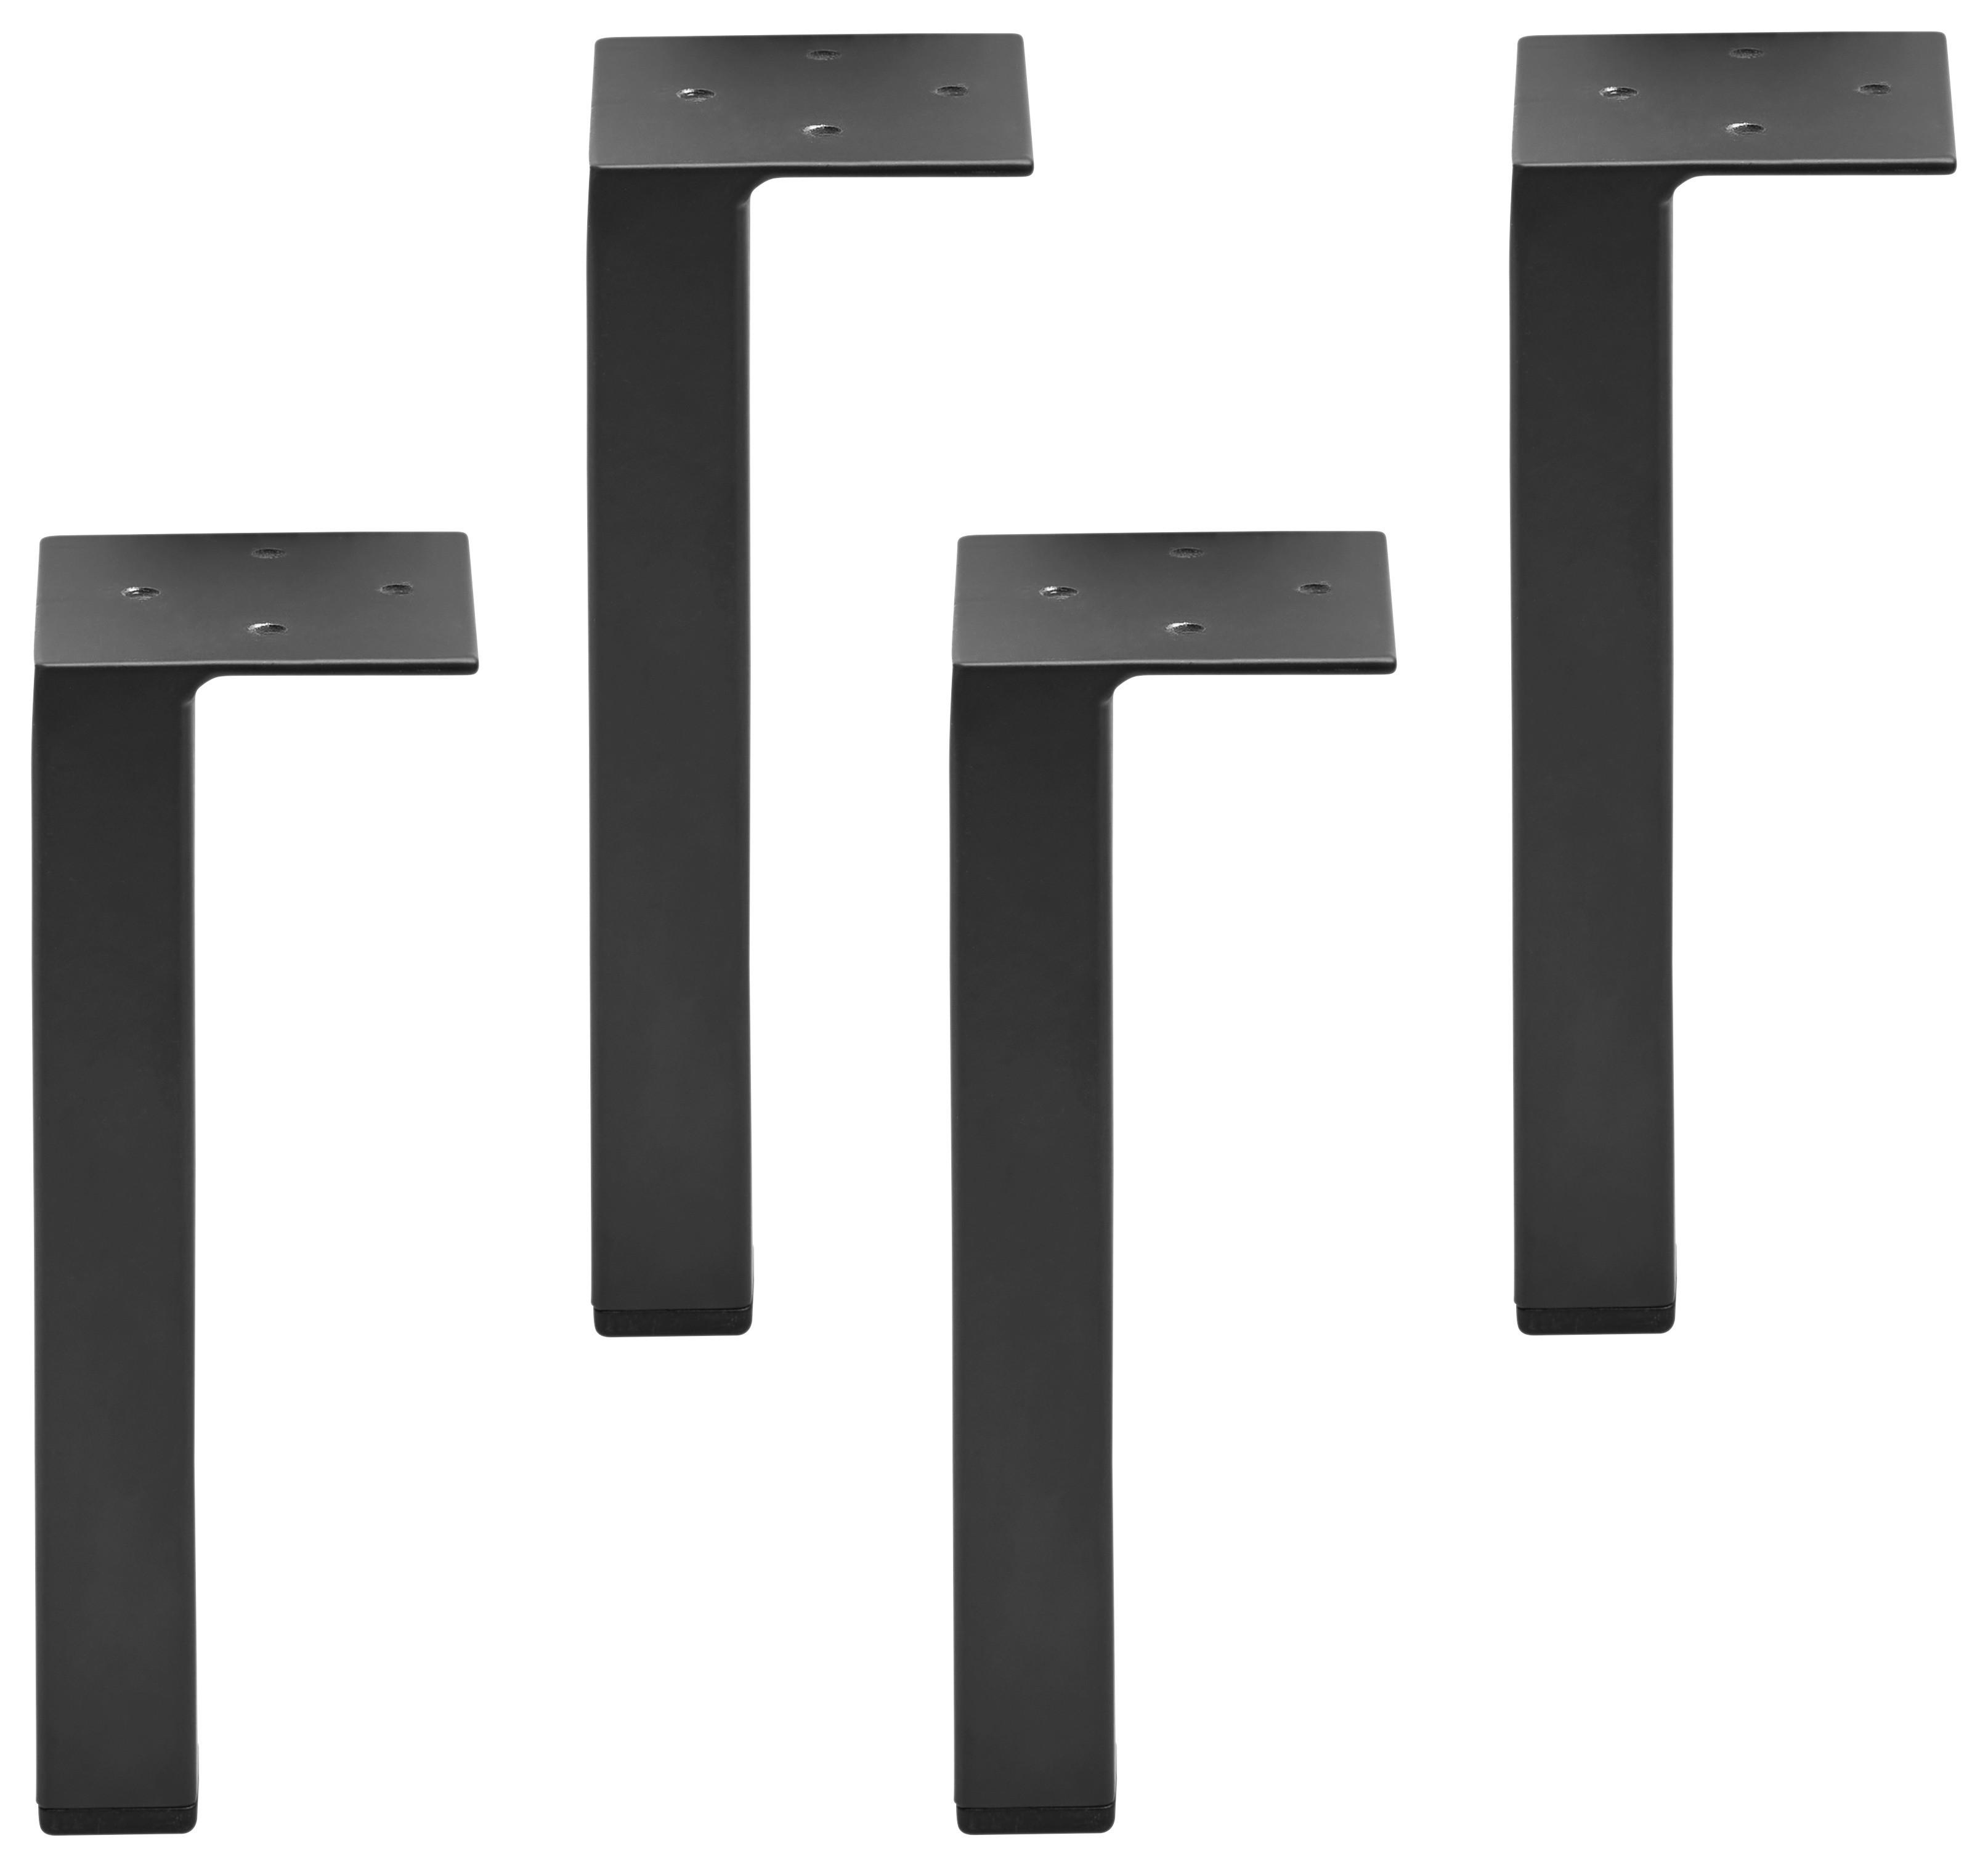 Fußset in Grau/Schwarz, 4-teilig - Schwarz/Grau, MODERN (11/15/11cm) - Based